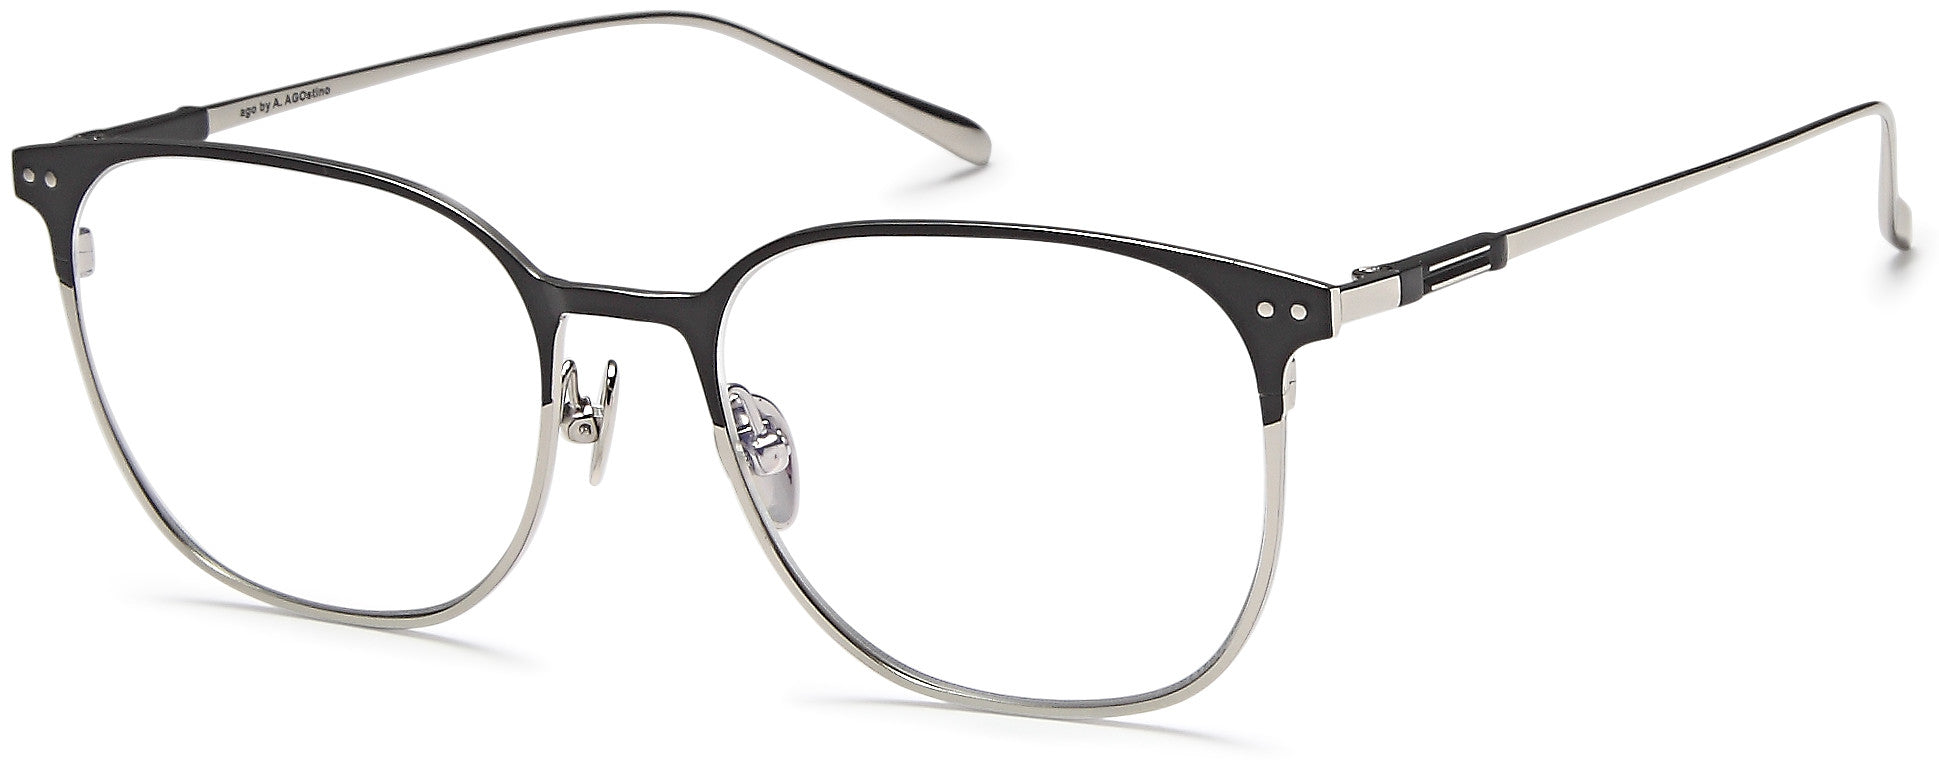 AGO Eyeglasses MF90001